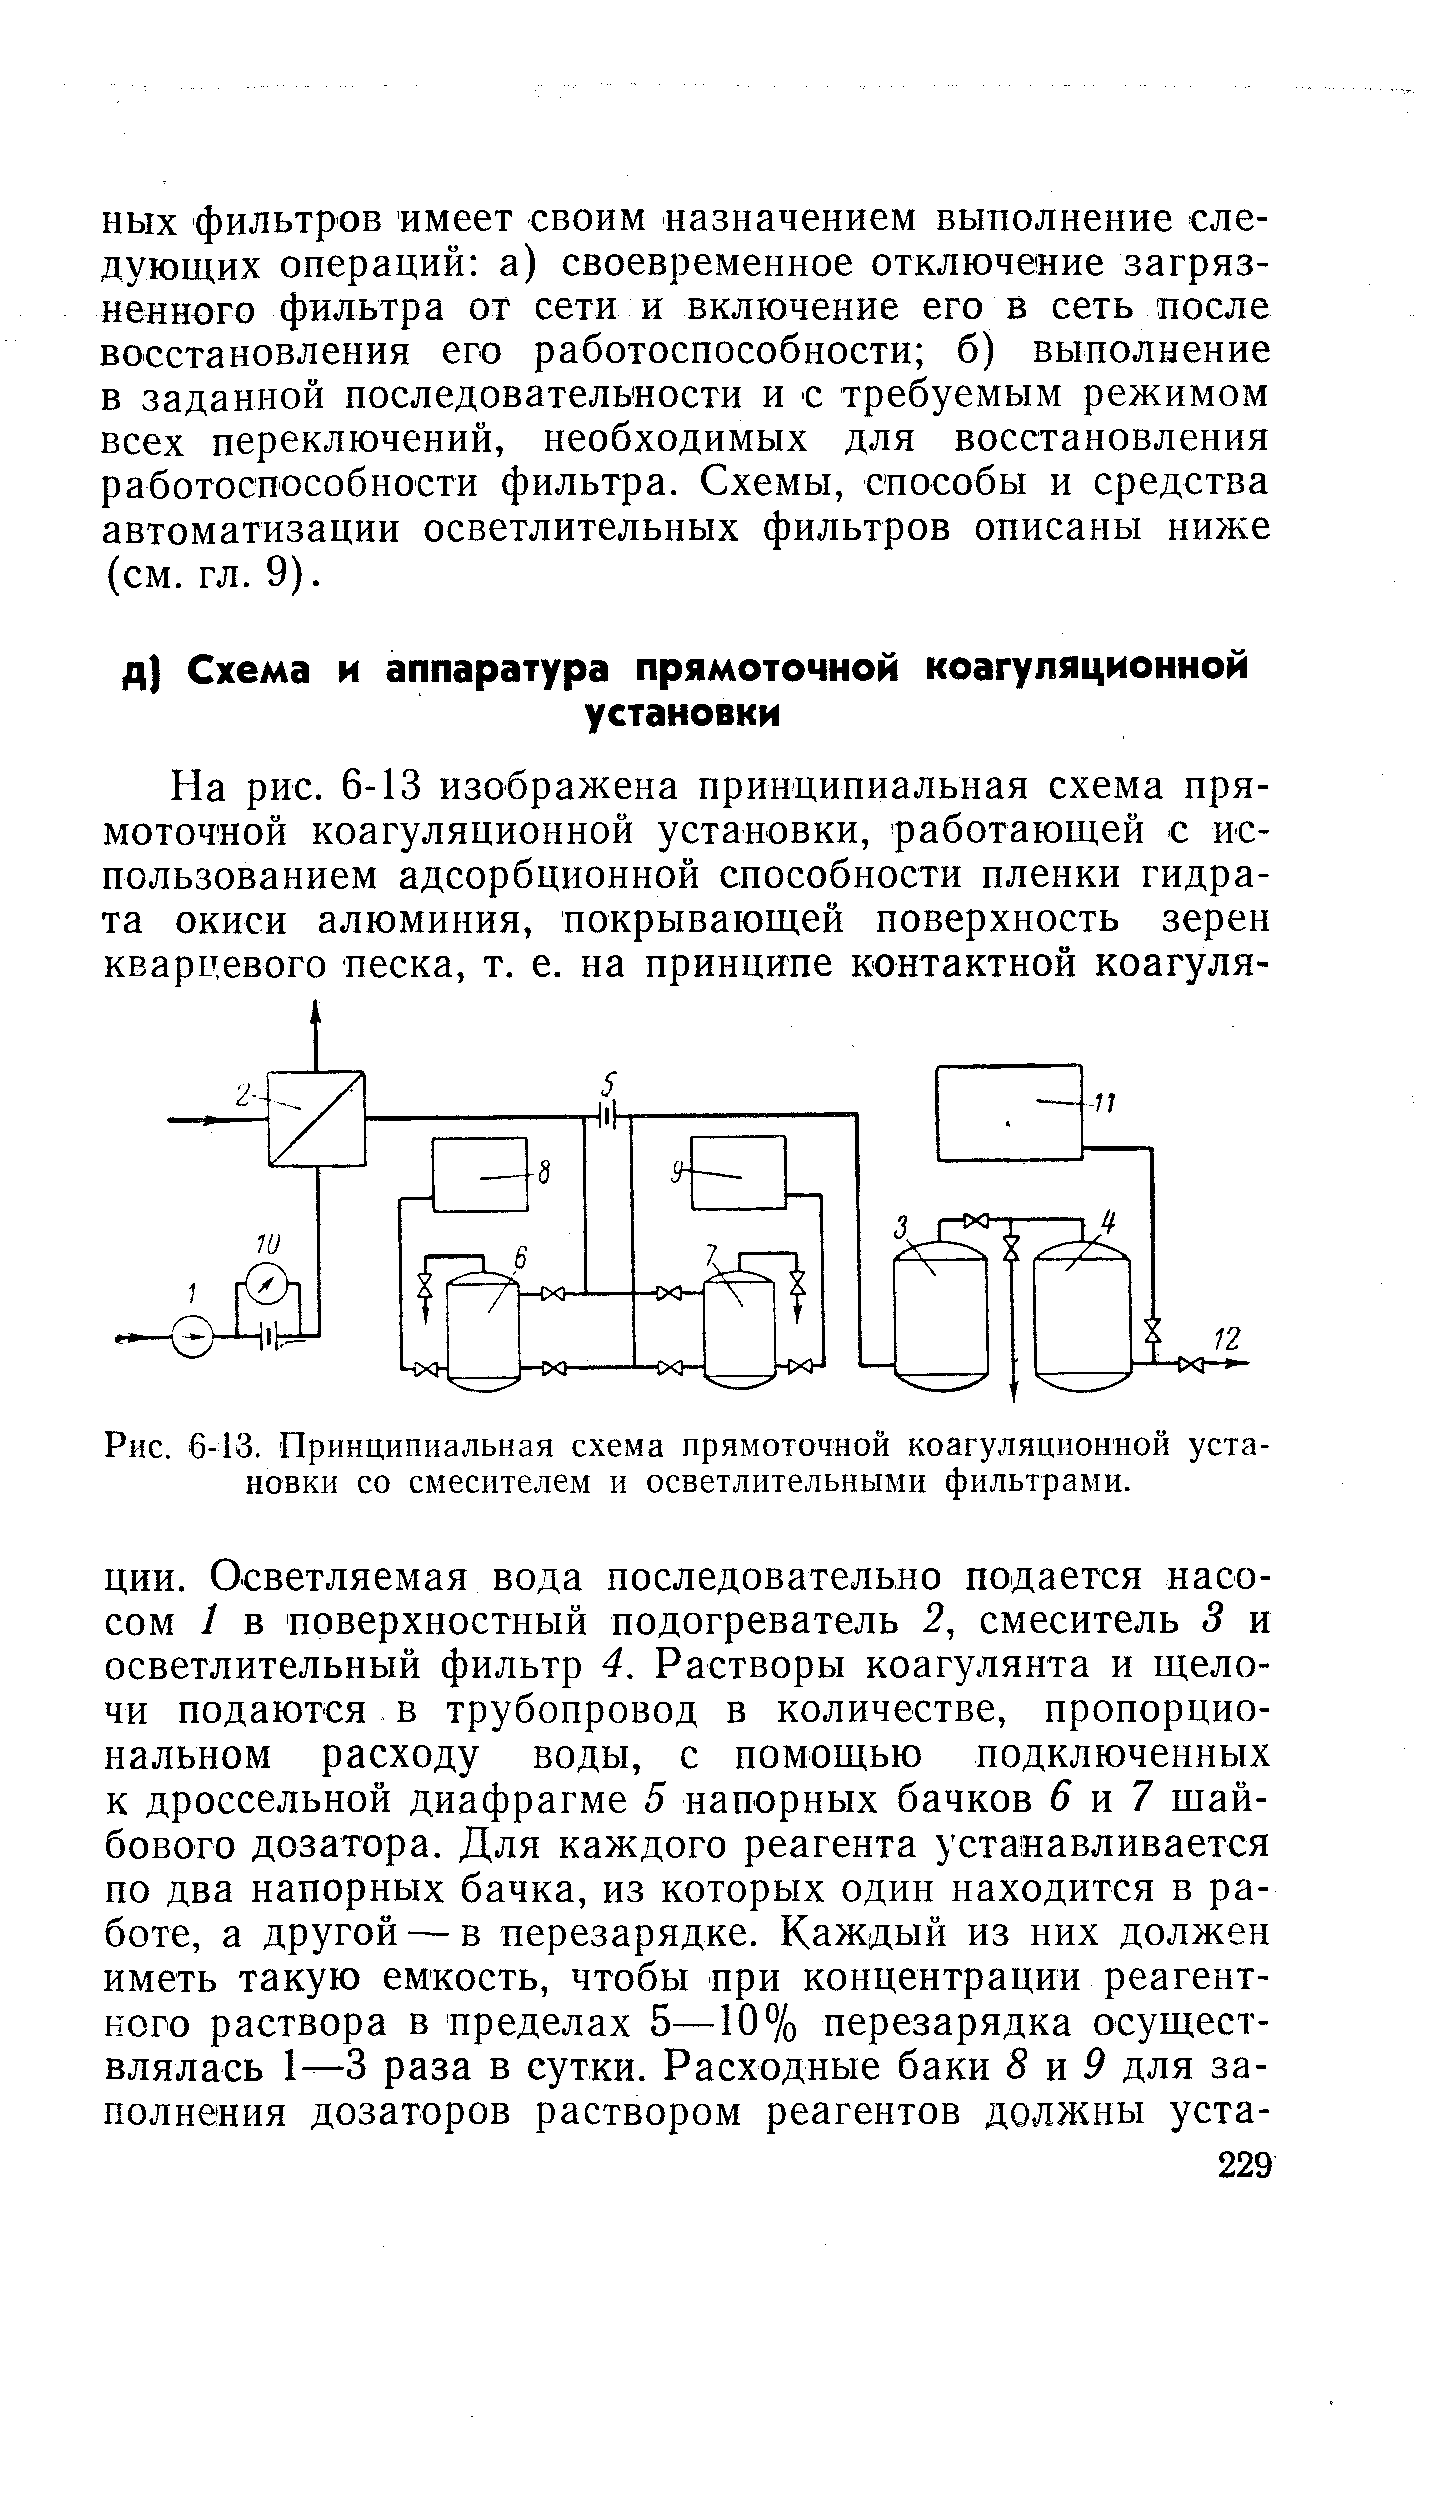 Инструкция по эксплуатации натрий катионитовых фильтров